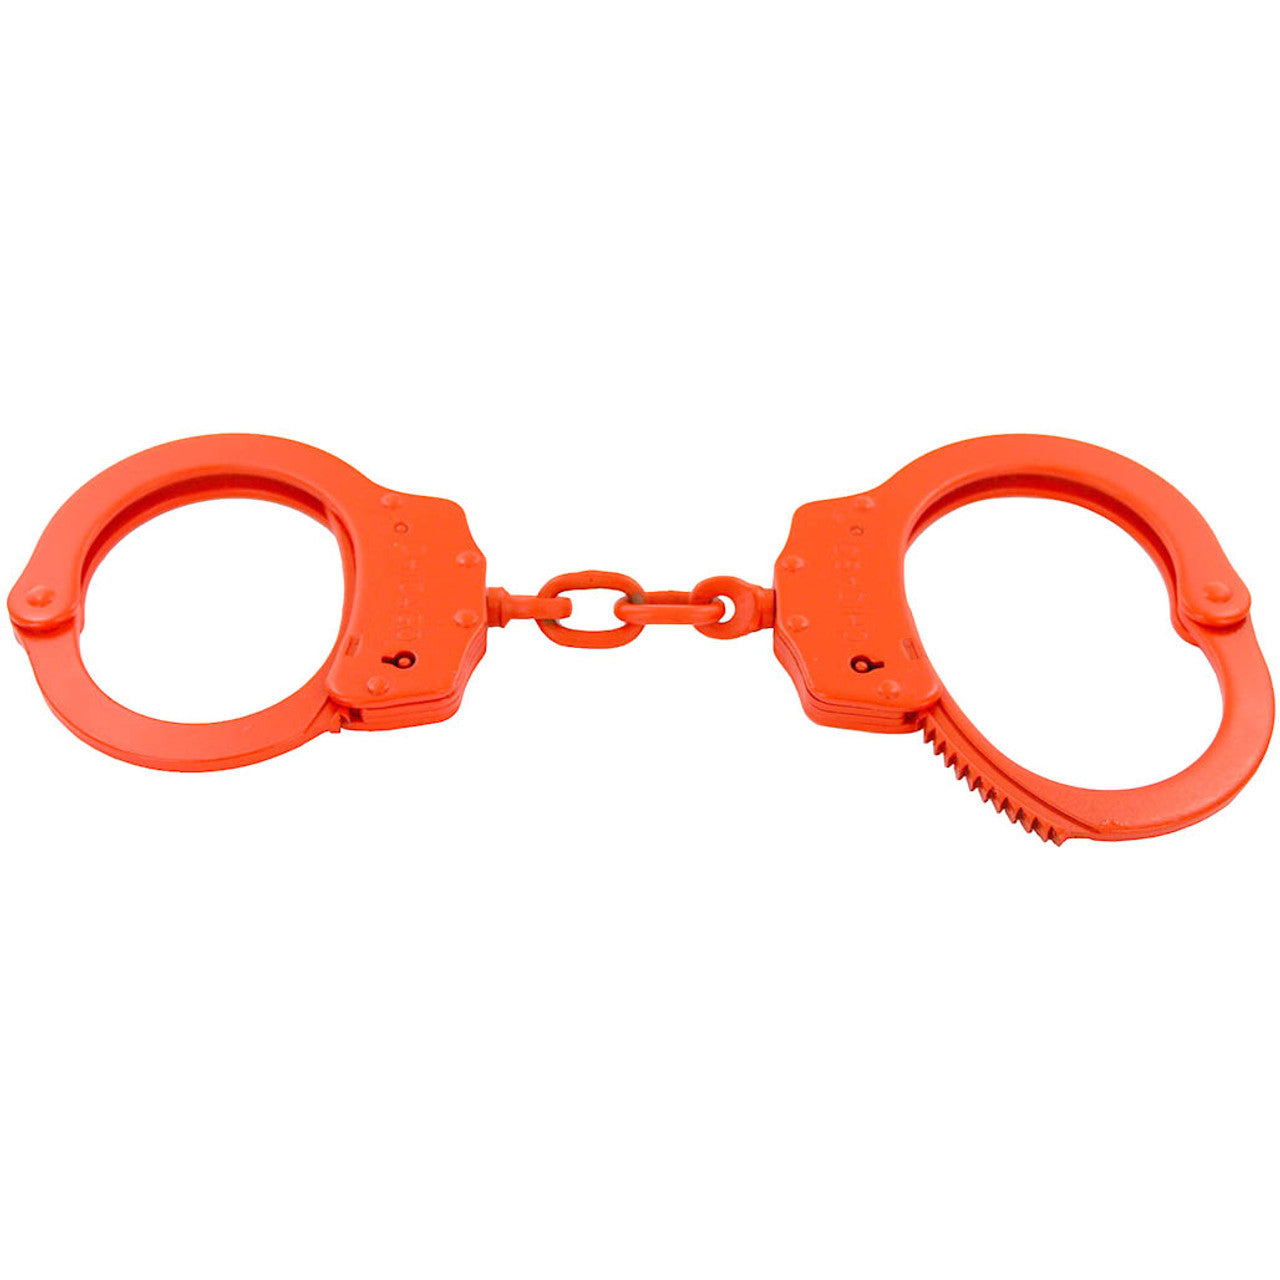 Chicago Double-Locking Handcuffs in Orange